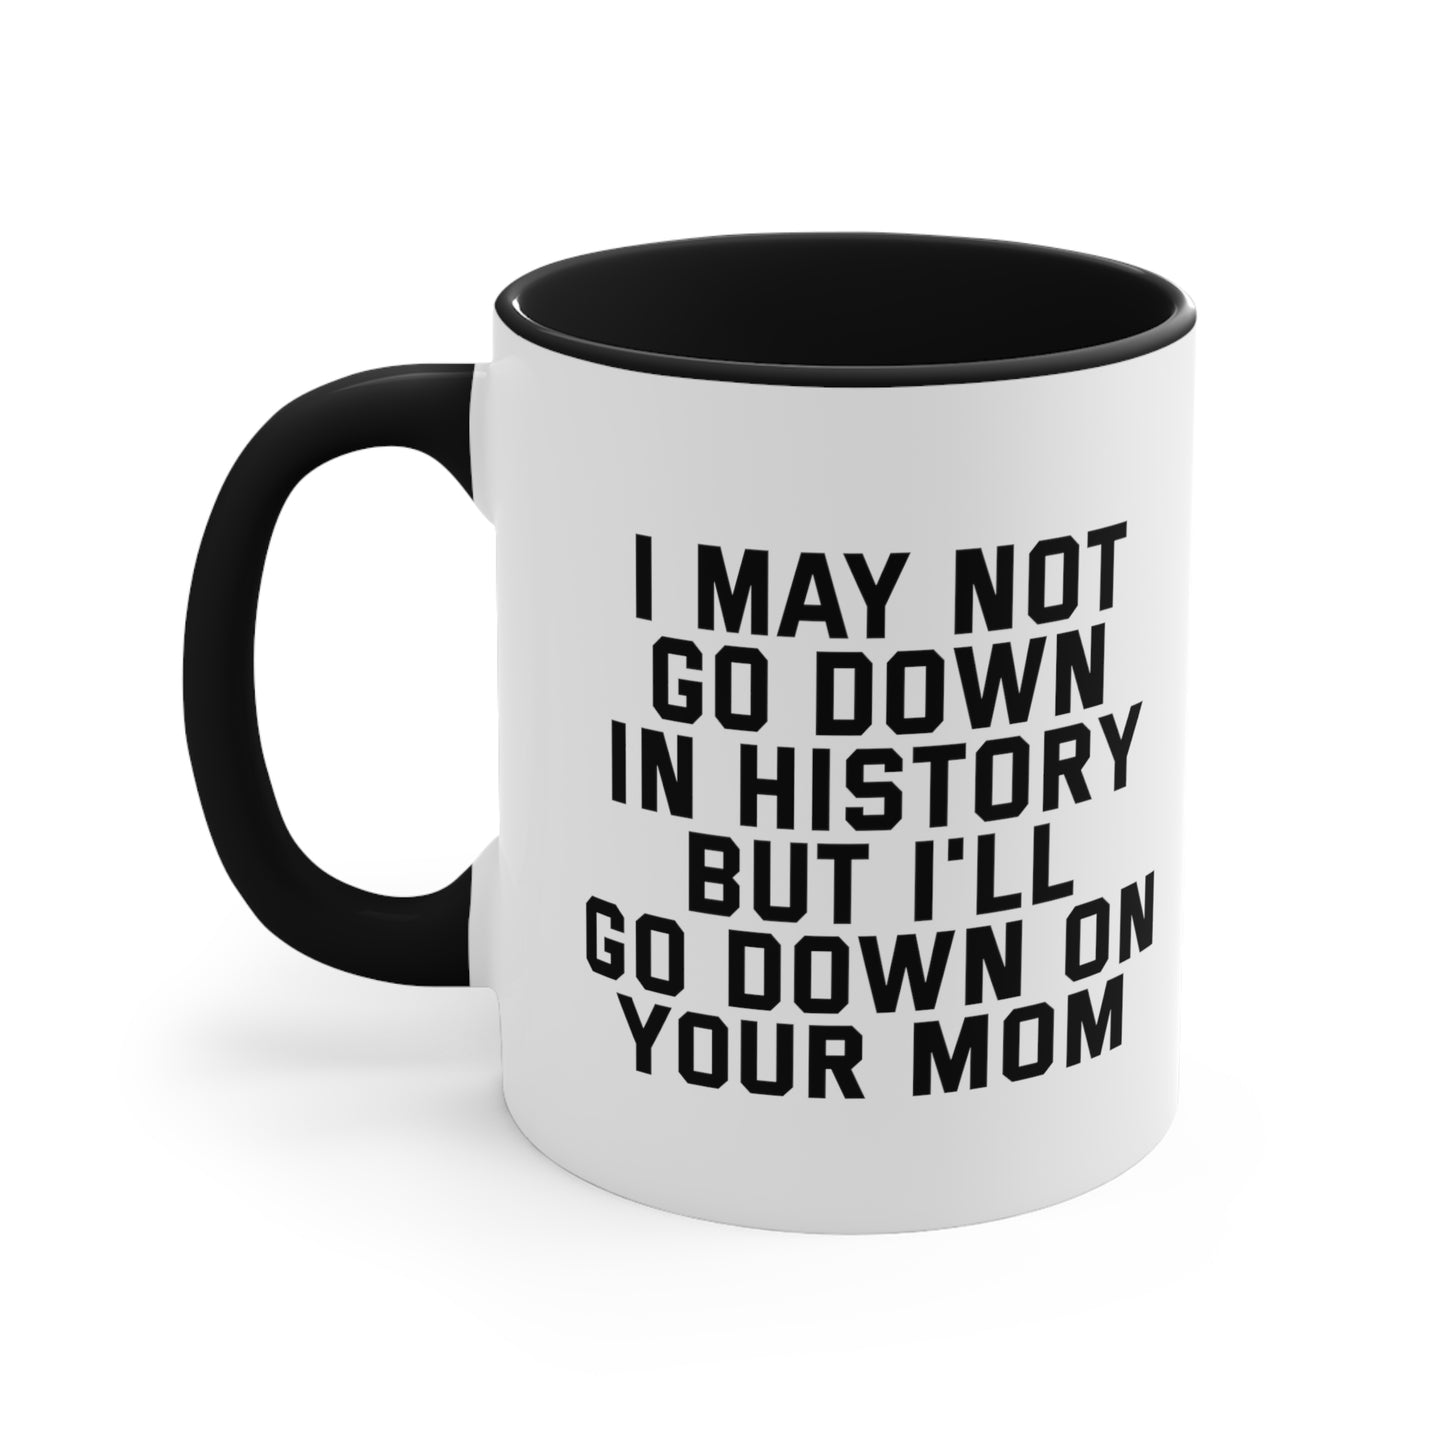 Down on Your Mom Mug, 11oz